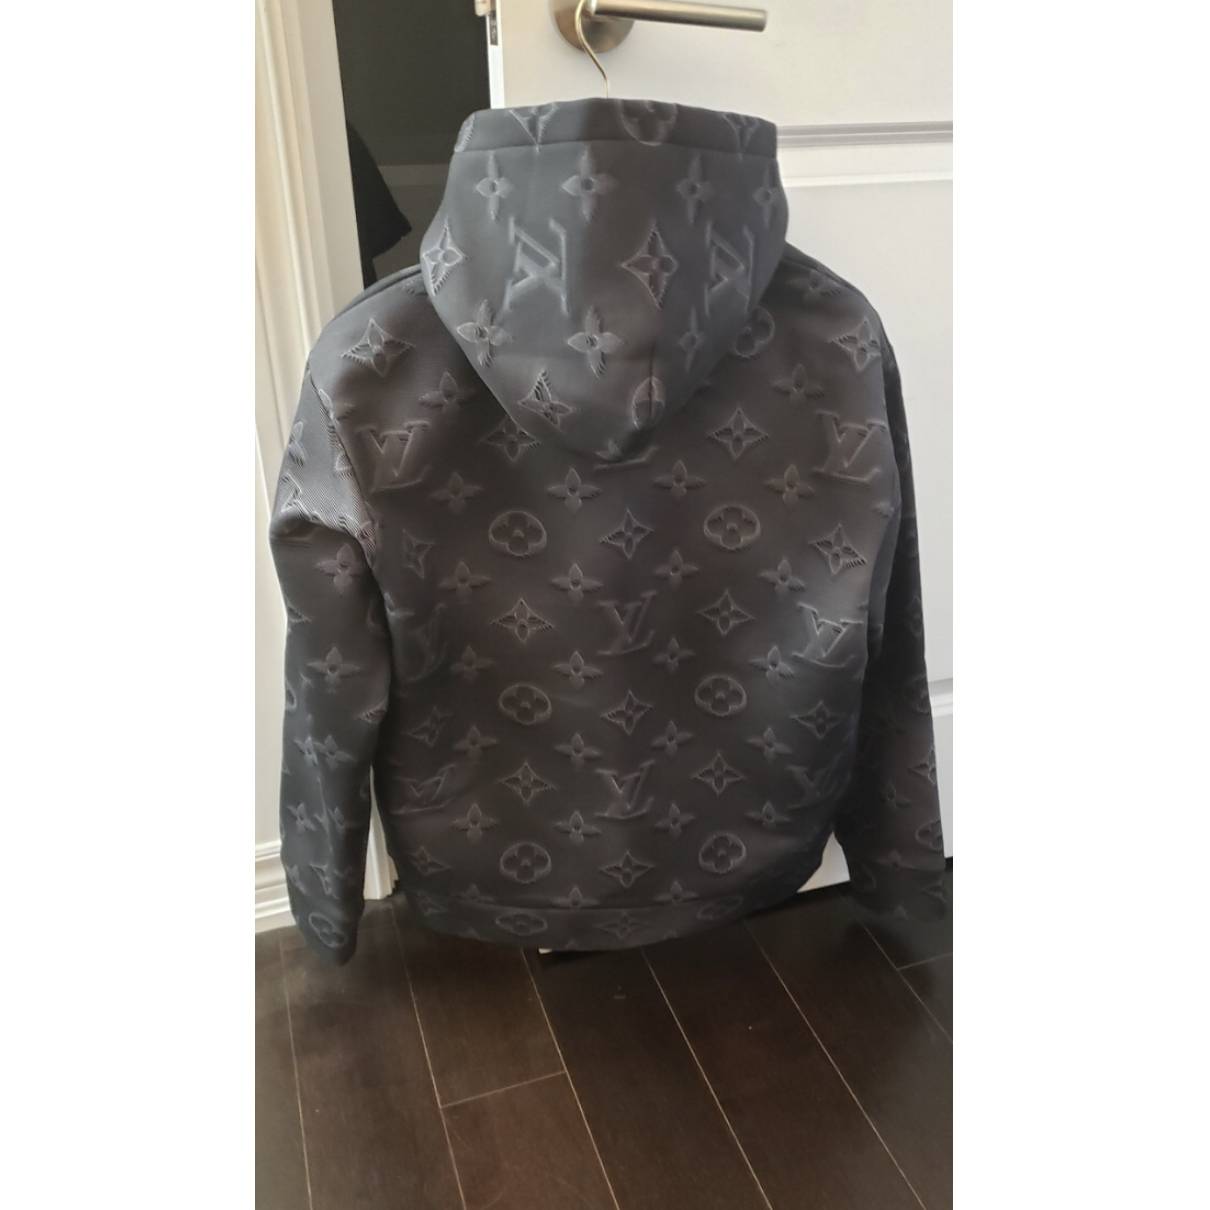 Sweatshirt Louis Vuitton Grey size S International in Cotton - 23855871